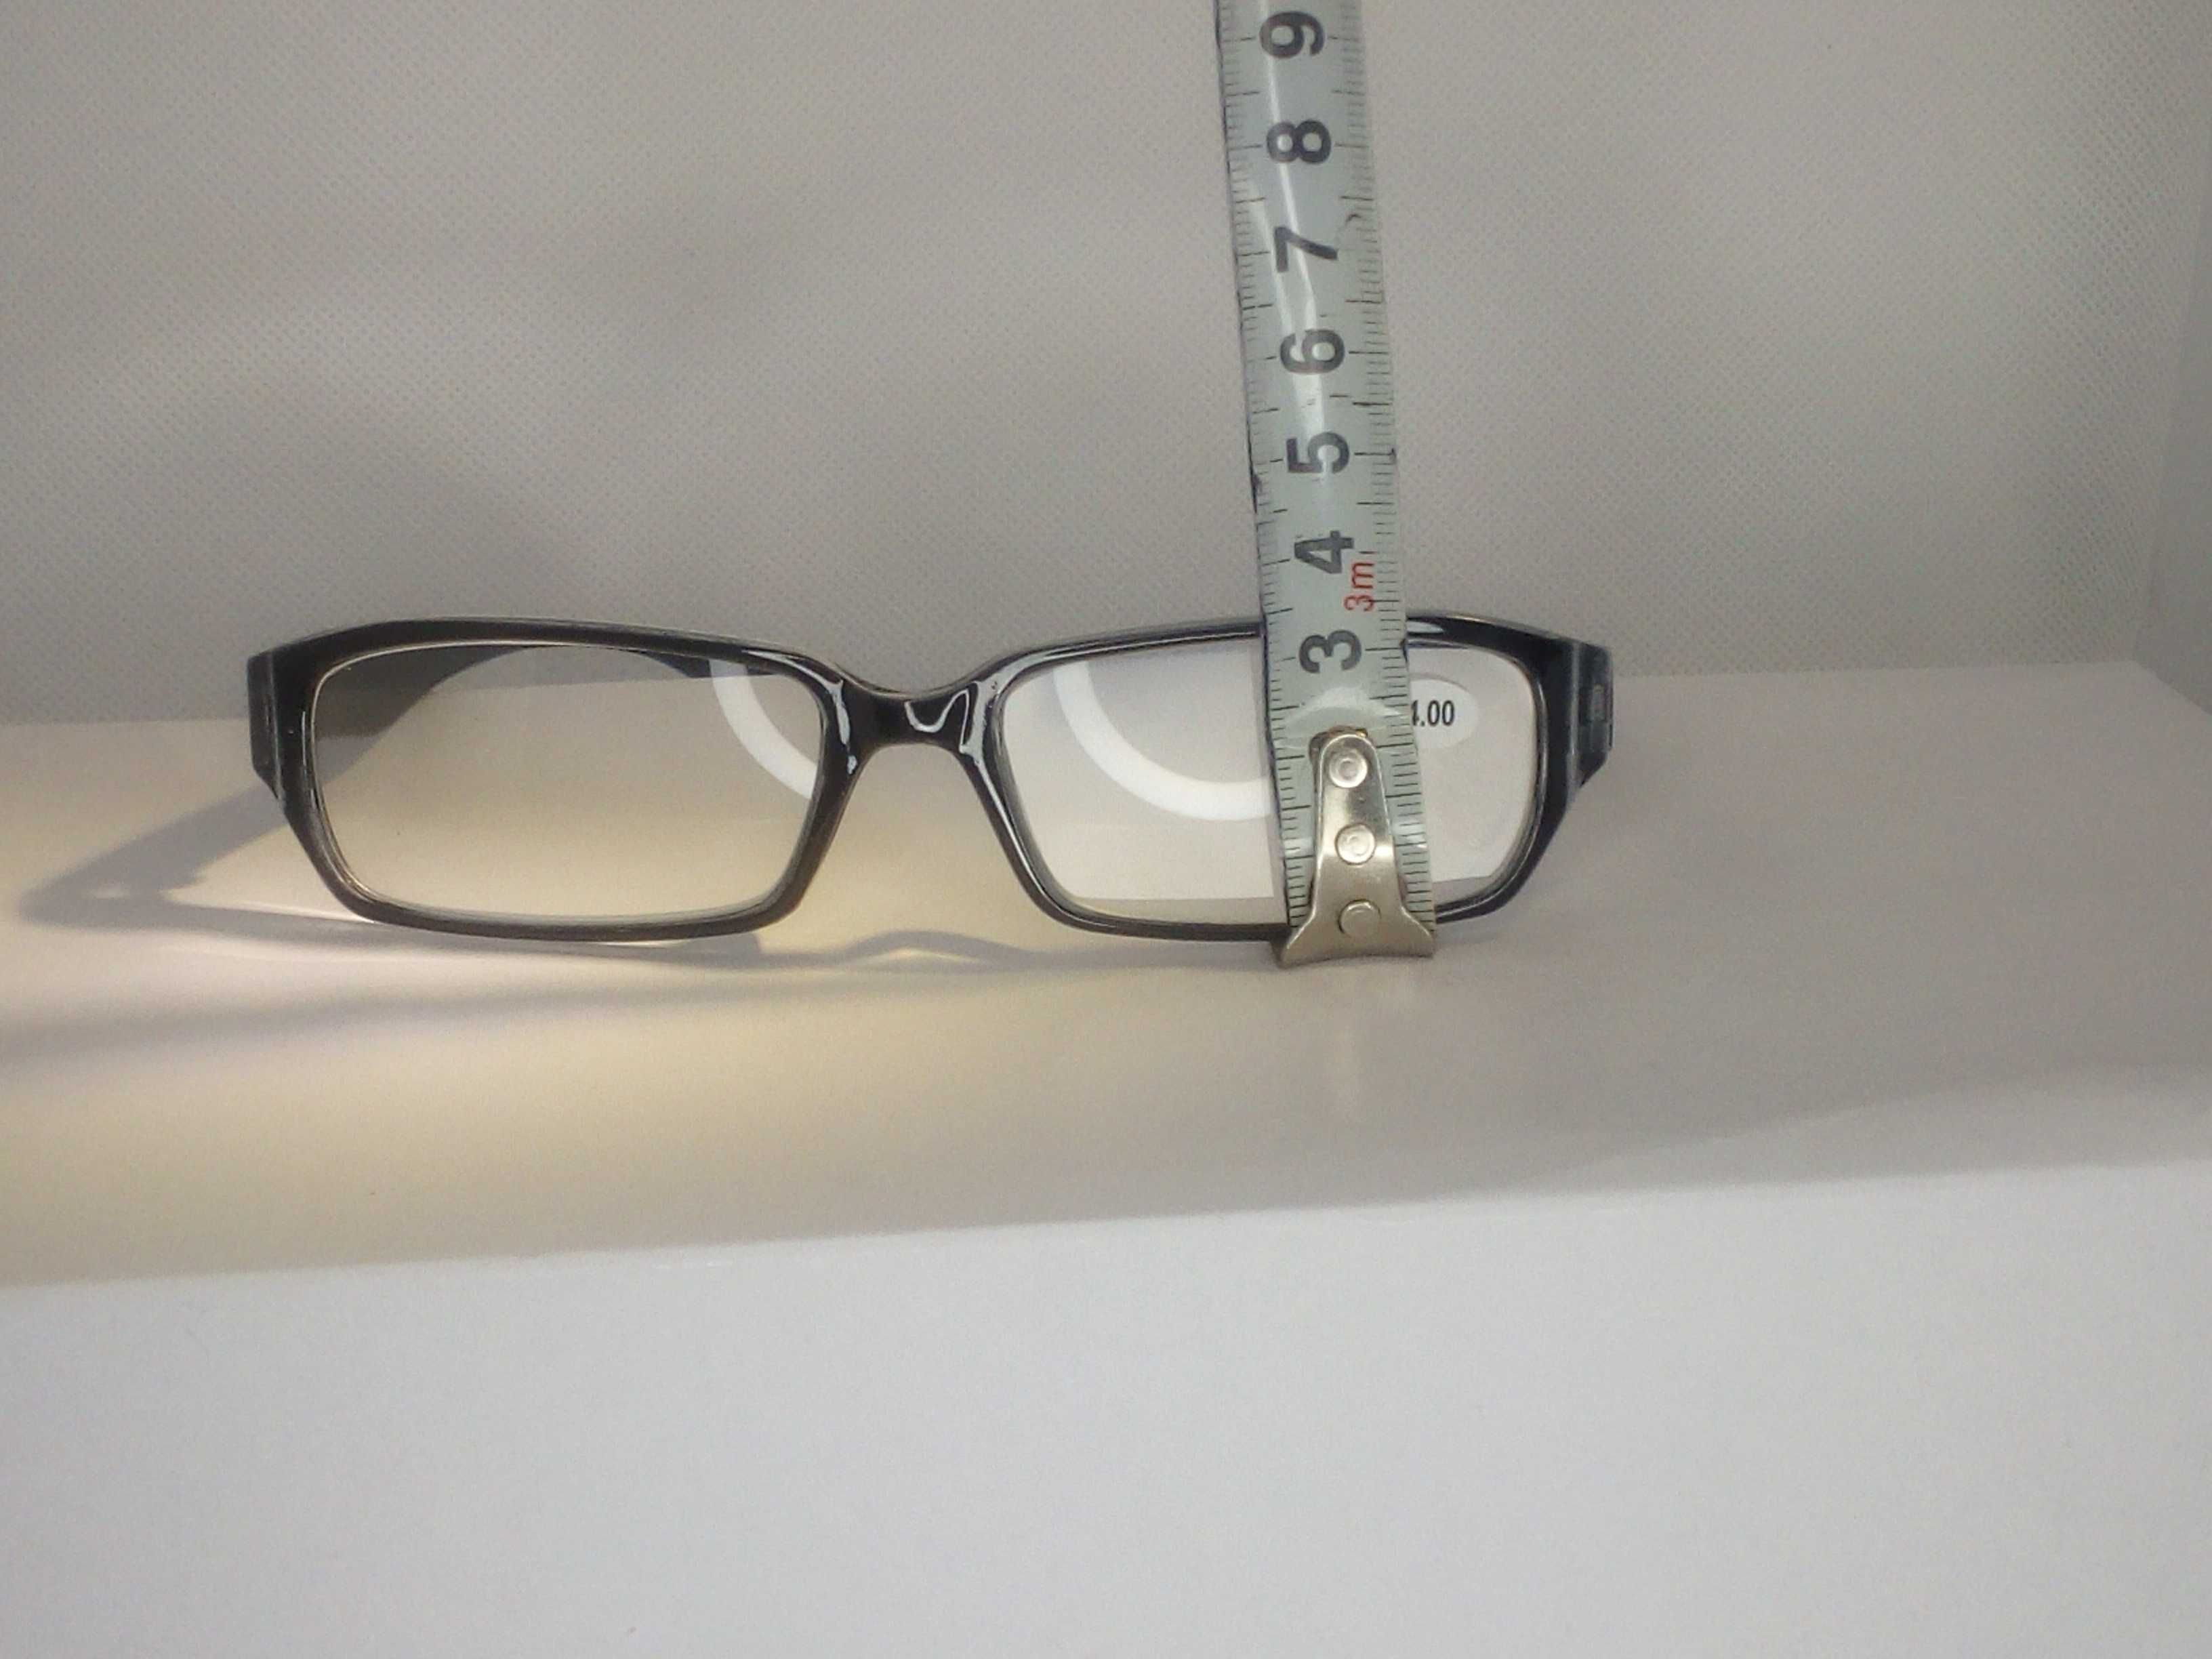 Okulary plusy do czytania korekcyjne +2 dioptrie